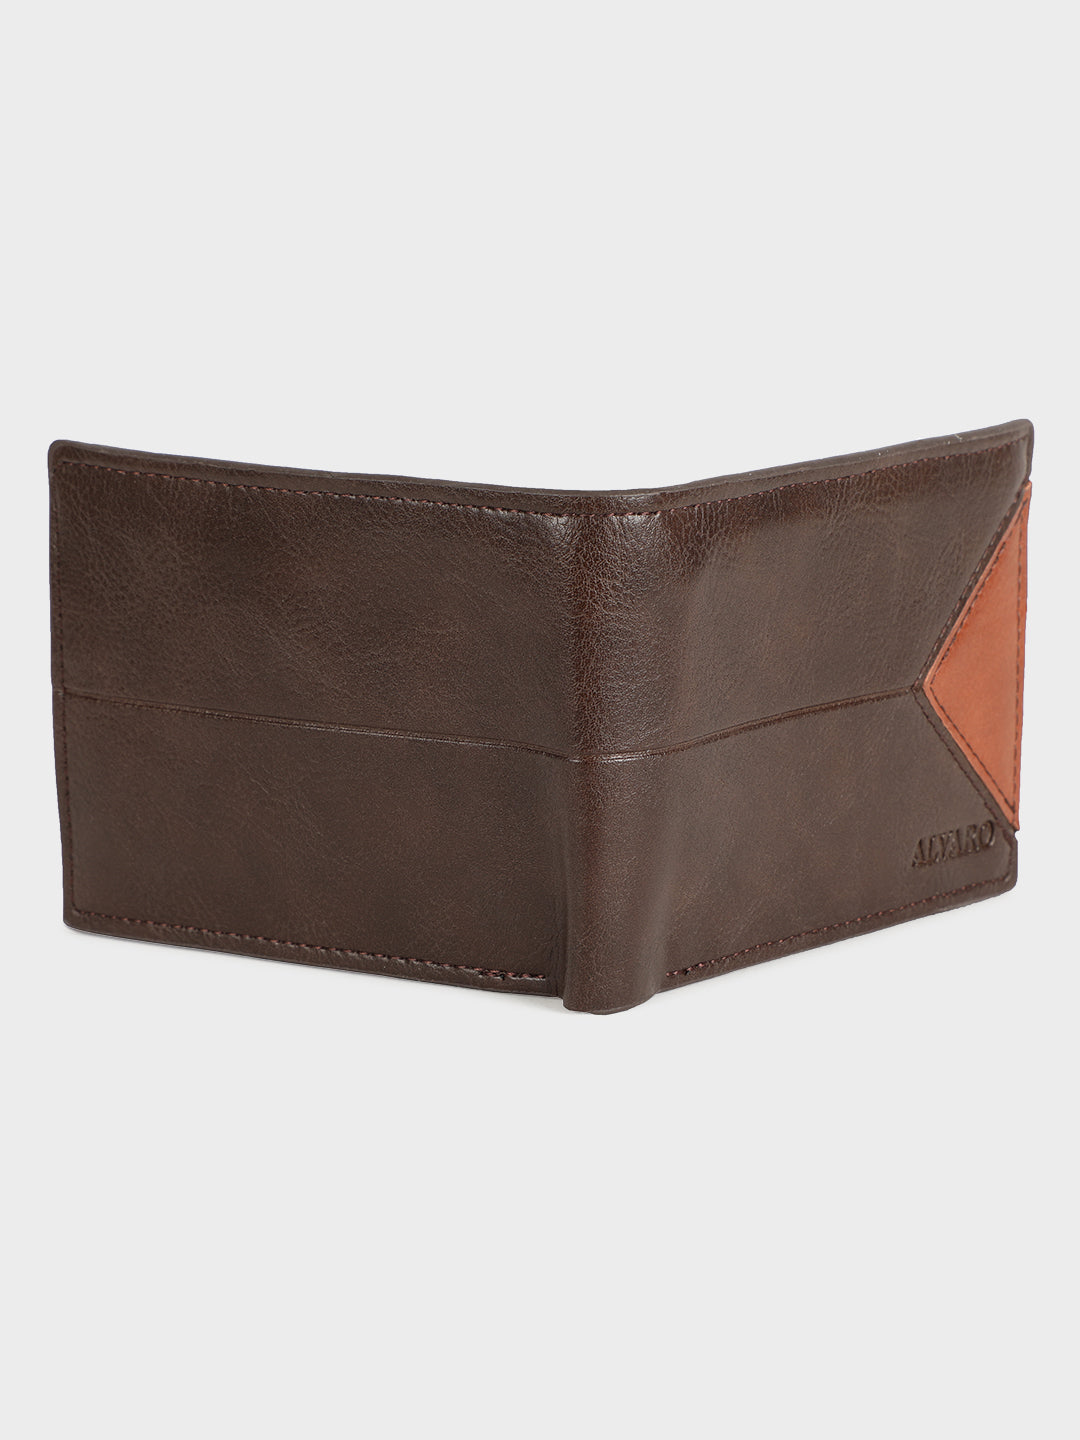 Alvaro Castagnino Men's Brown::Orange Color Leather Wallet